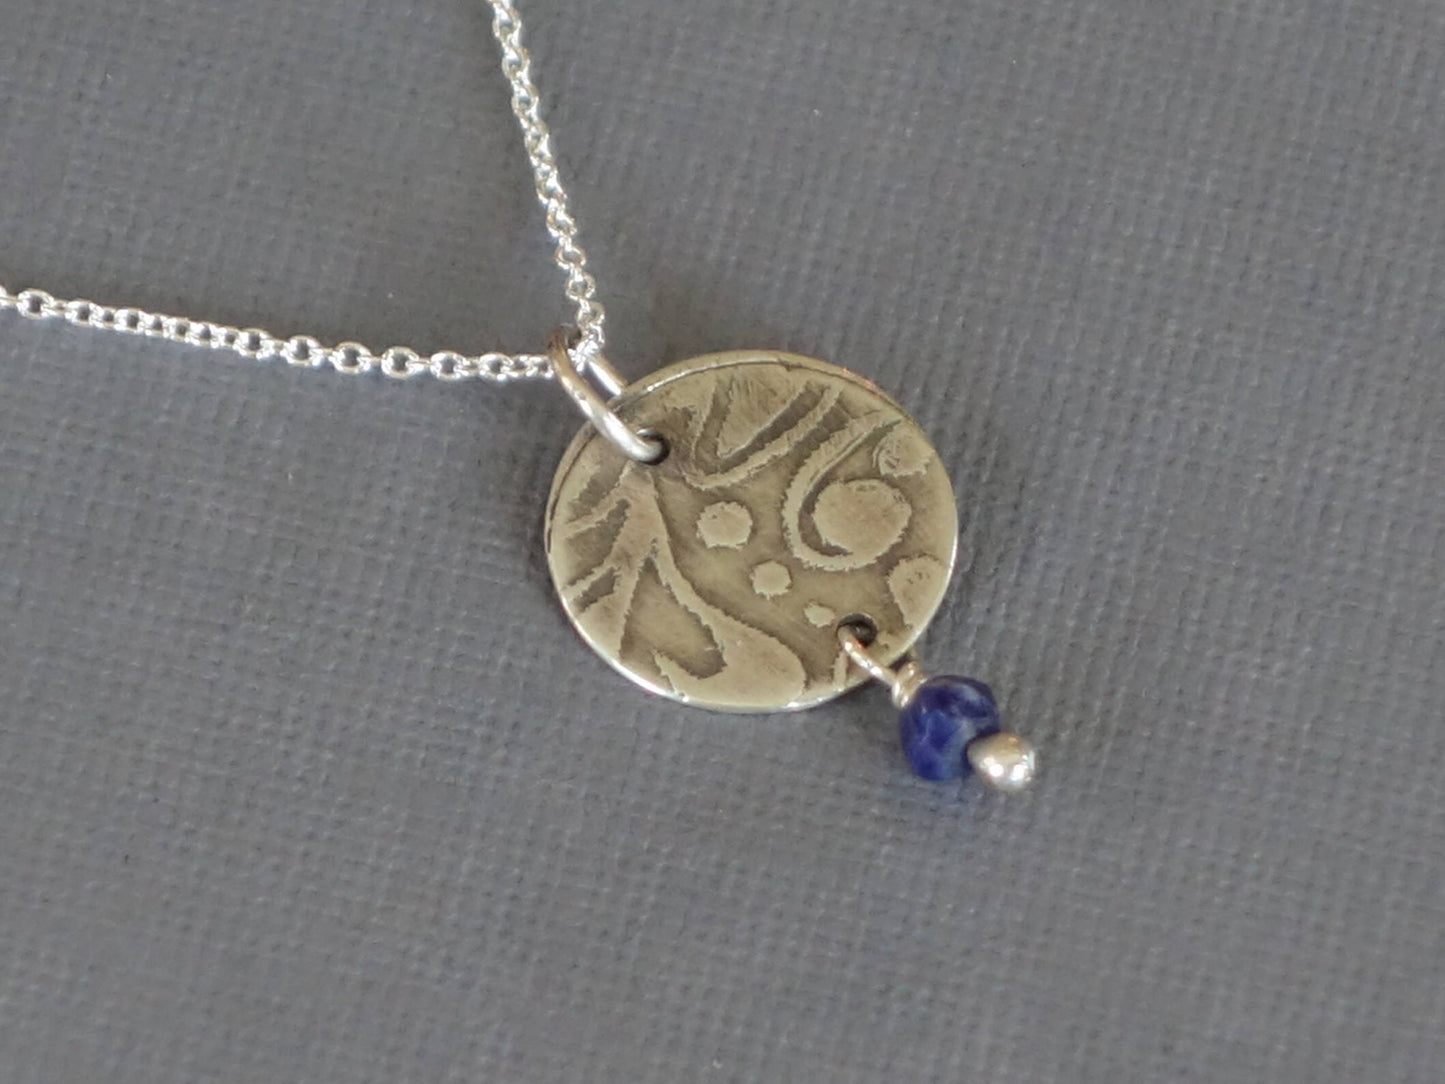 Lapis Pendant, Lapis Necklace, Etched Pendant, Metalwork Pendant, Blue Pendant, Blue Necklace